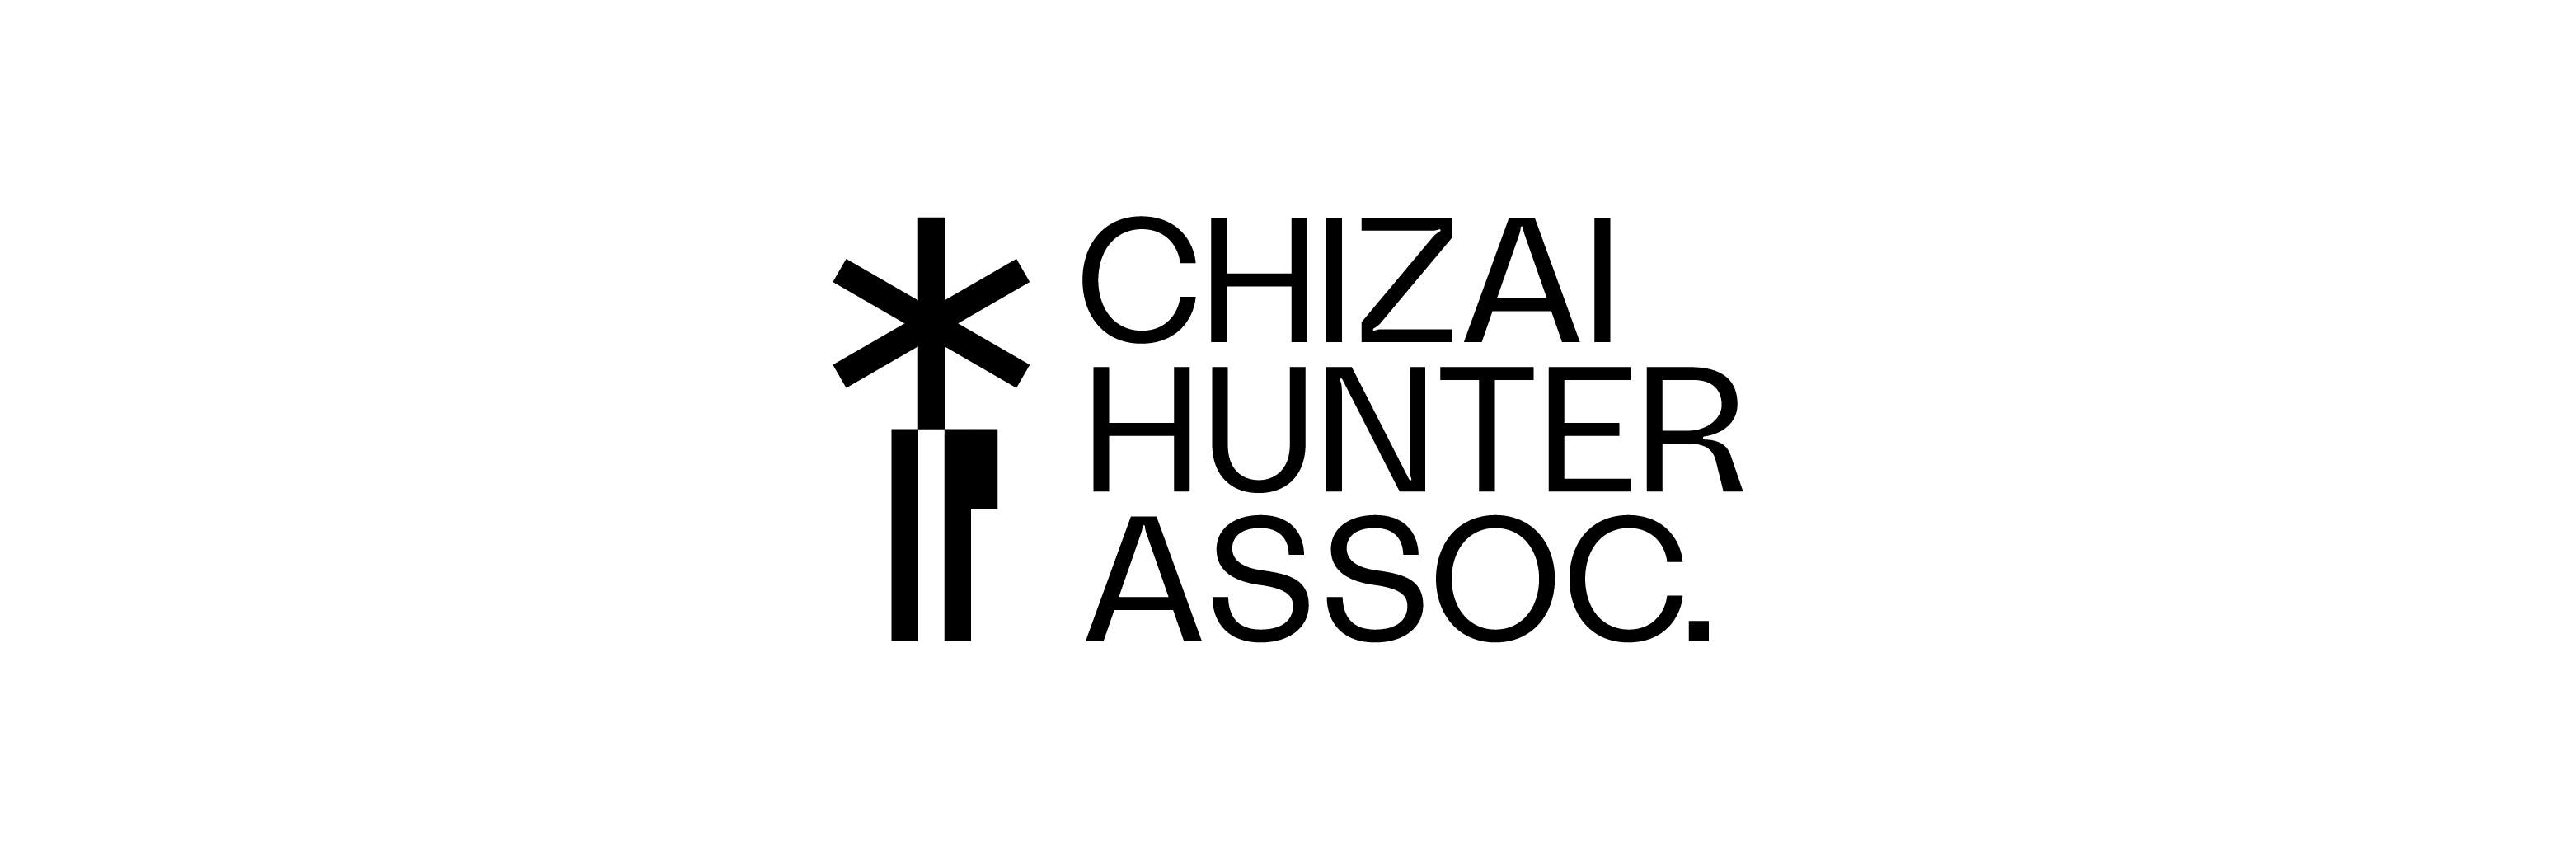 CHIZAI HUNTER ASSOC.